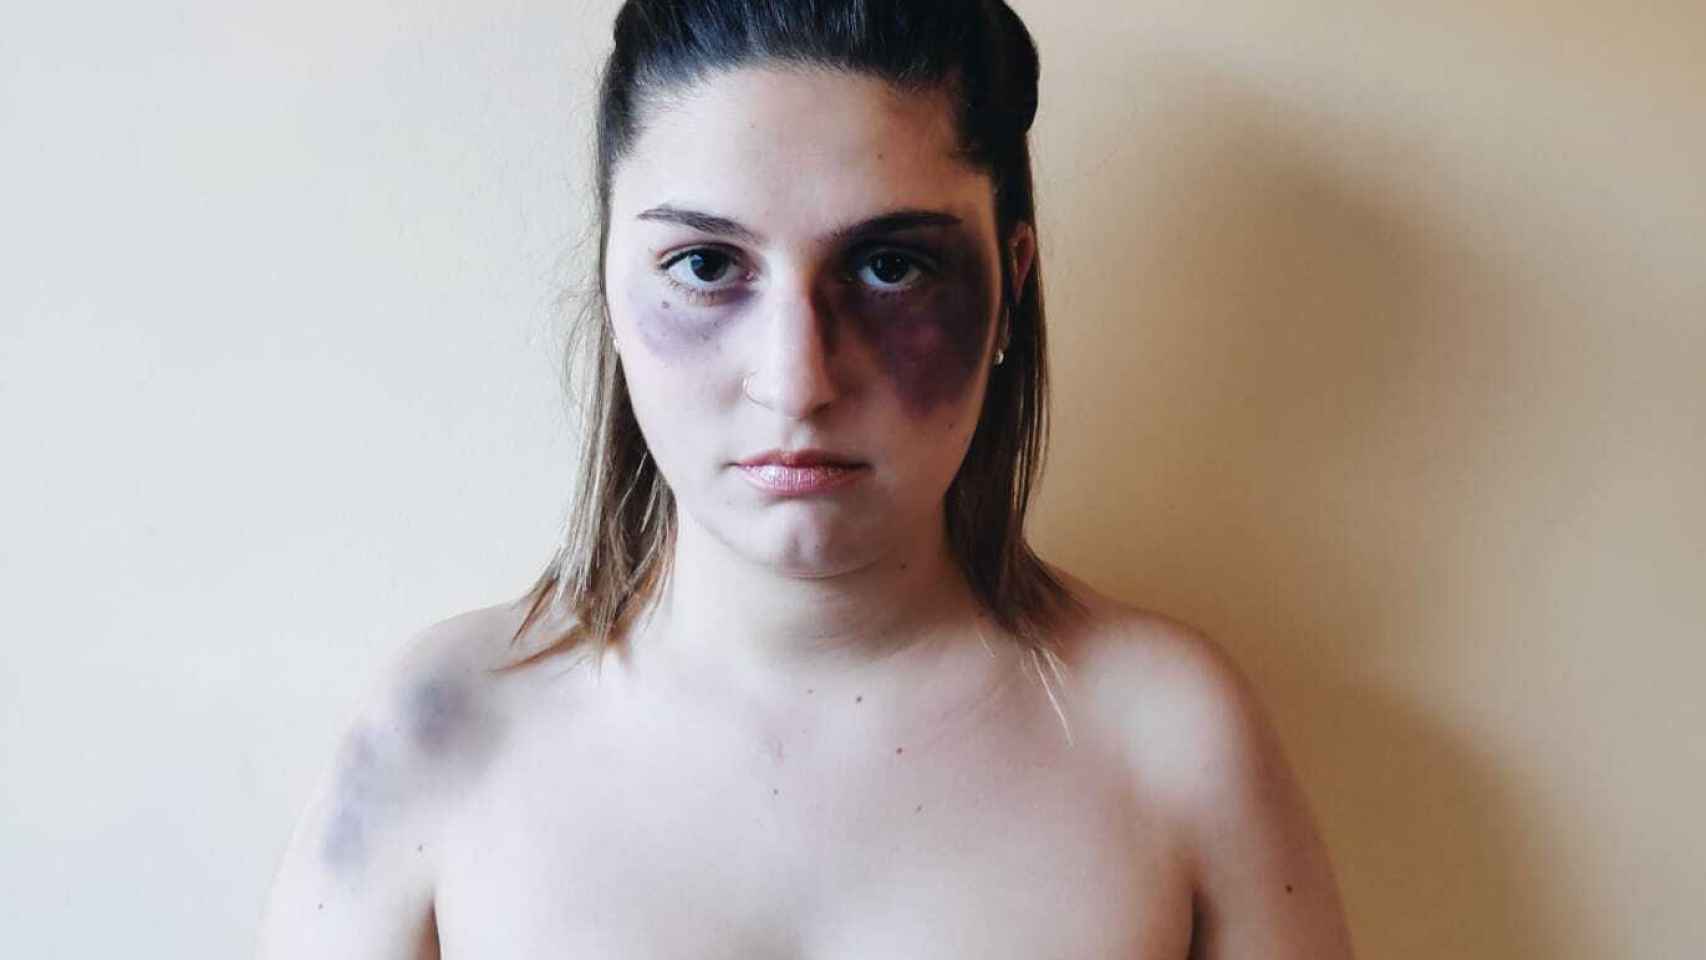 Noelia, maquillada en la imagen para reclamar más protección, recibió ocho puñaladas hace seis años